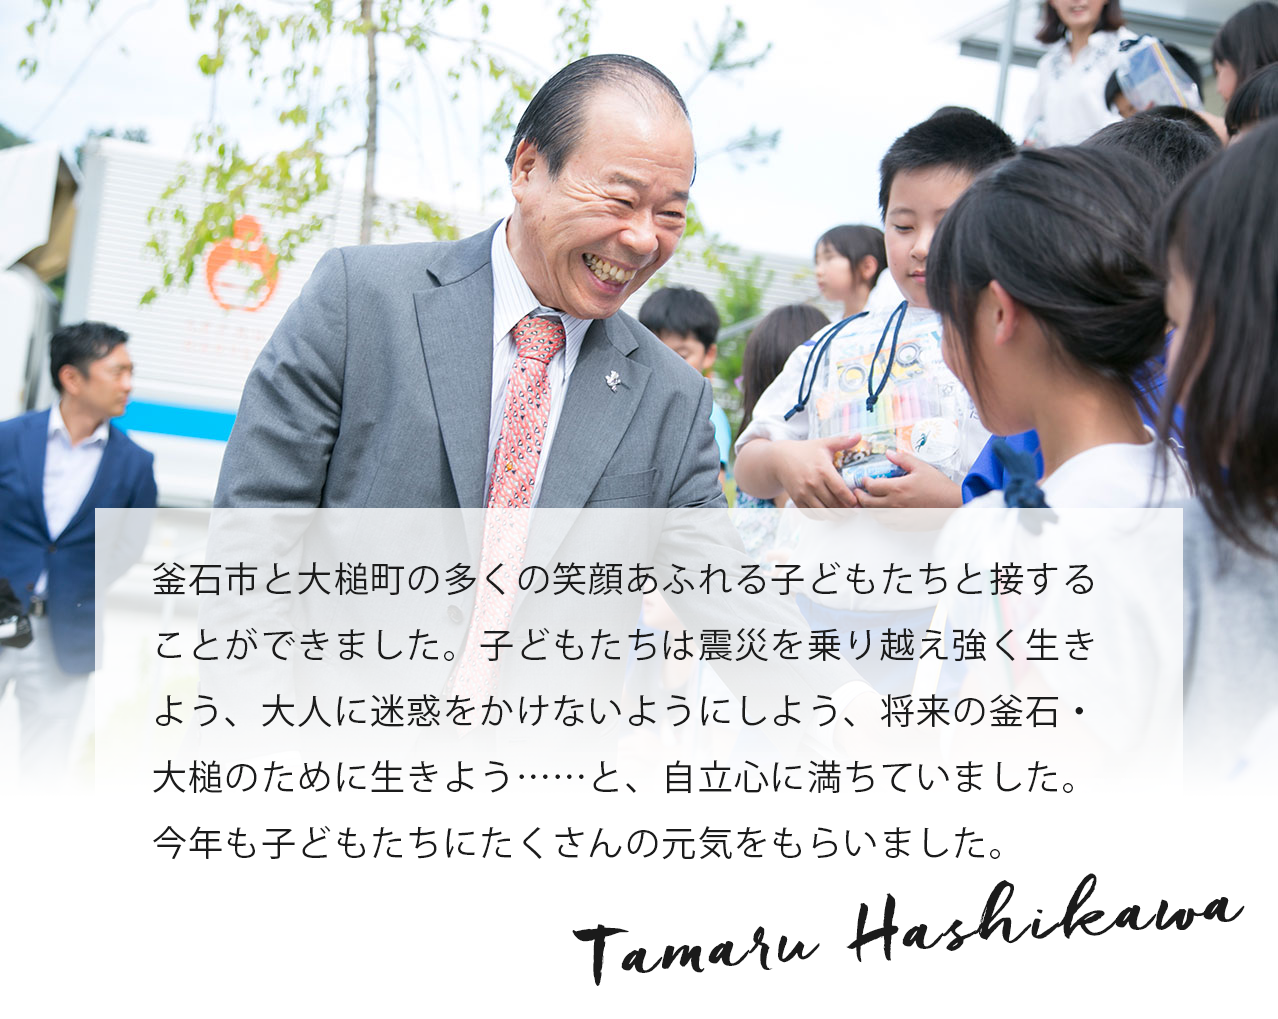 釜石市と大槌町の多くの笑顔あふれる子どもたちと接することができました。子どもたちは震災を乗り越え強く生きよう、大人に迷惑をかけないようにしよう、将来の釜石・大槌のために生きよう……と、自立心に満ちていました。今年も子どもたちにたくさんの元気をもらいました。 Tamaru Hashikawa